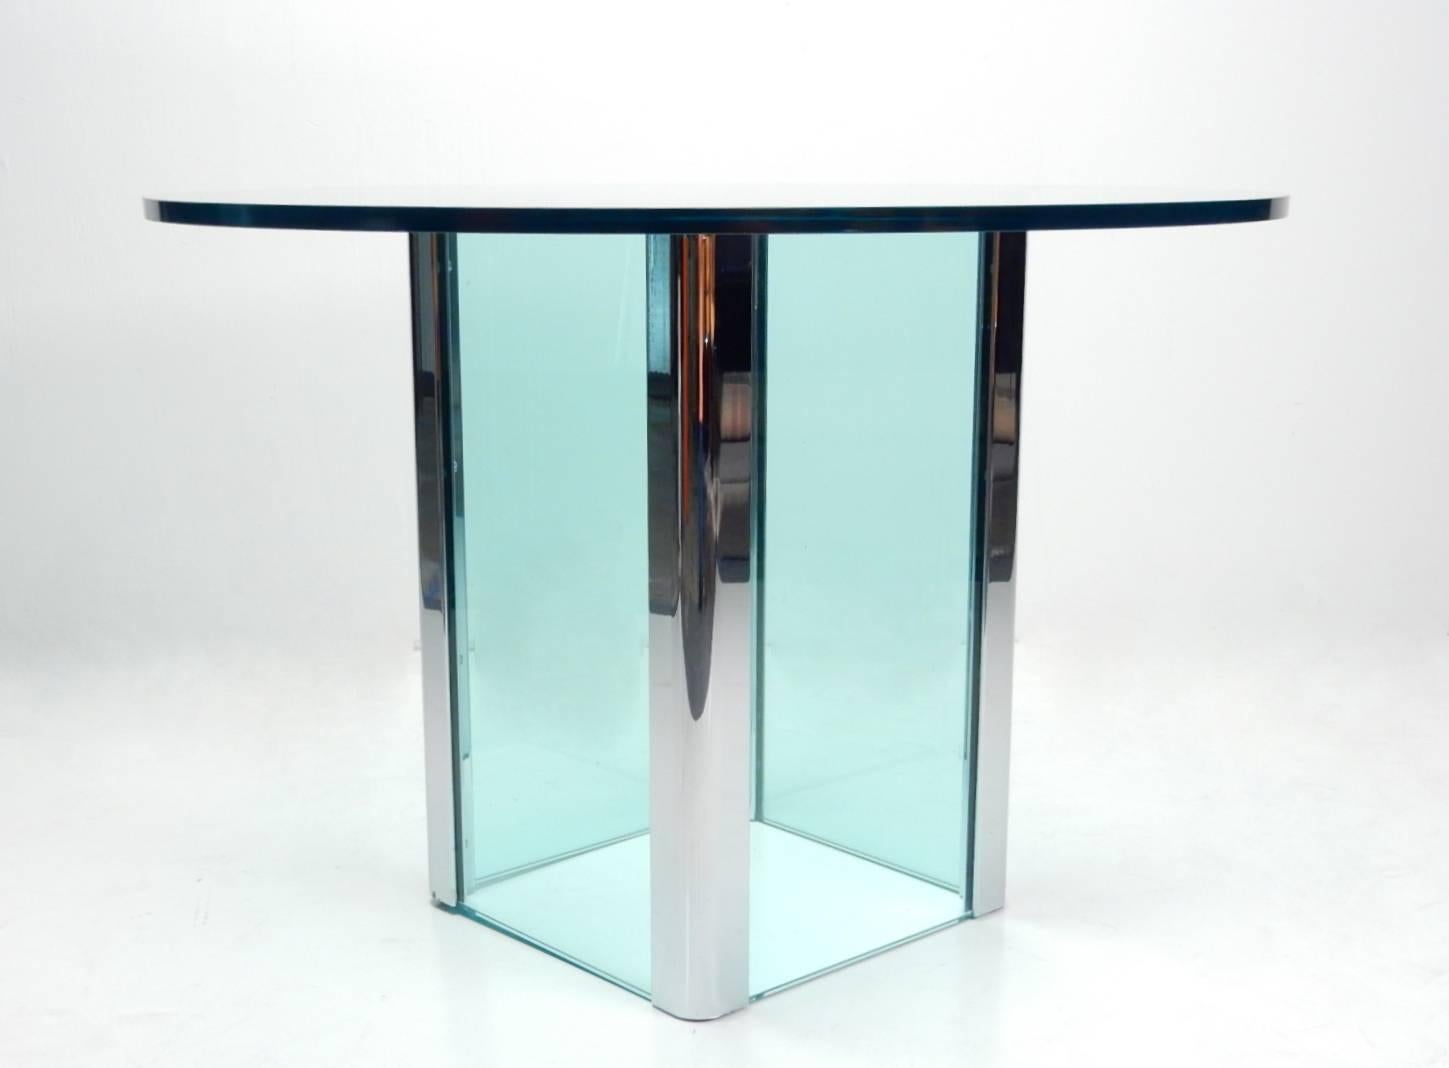 1970 Leon Rosen pour Pace Table d'entrée en verre et chrome.
Côtés de la base en verre épais avec coins en acier chromé.
Plateau en verre rond et épais assorti. Magnifique teinte agua.